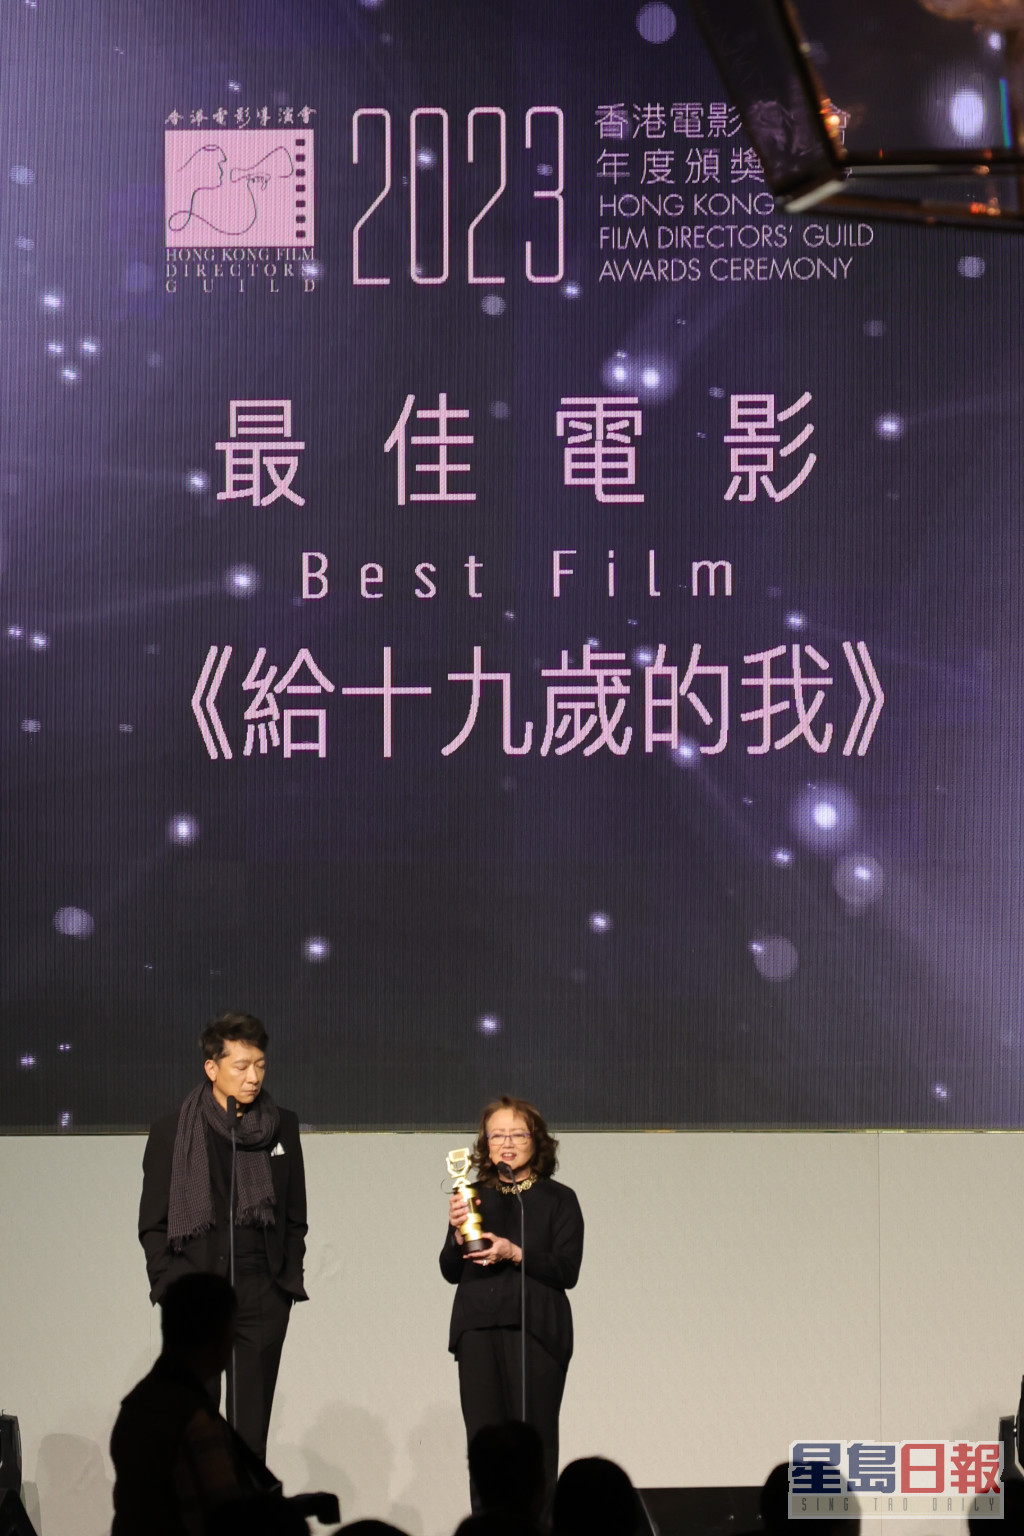 監製黃慧和導演之一郭偉倫上台領獎，未有接受傳媒訪問。